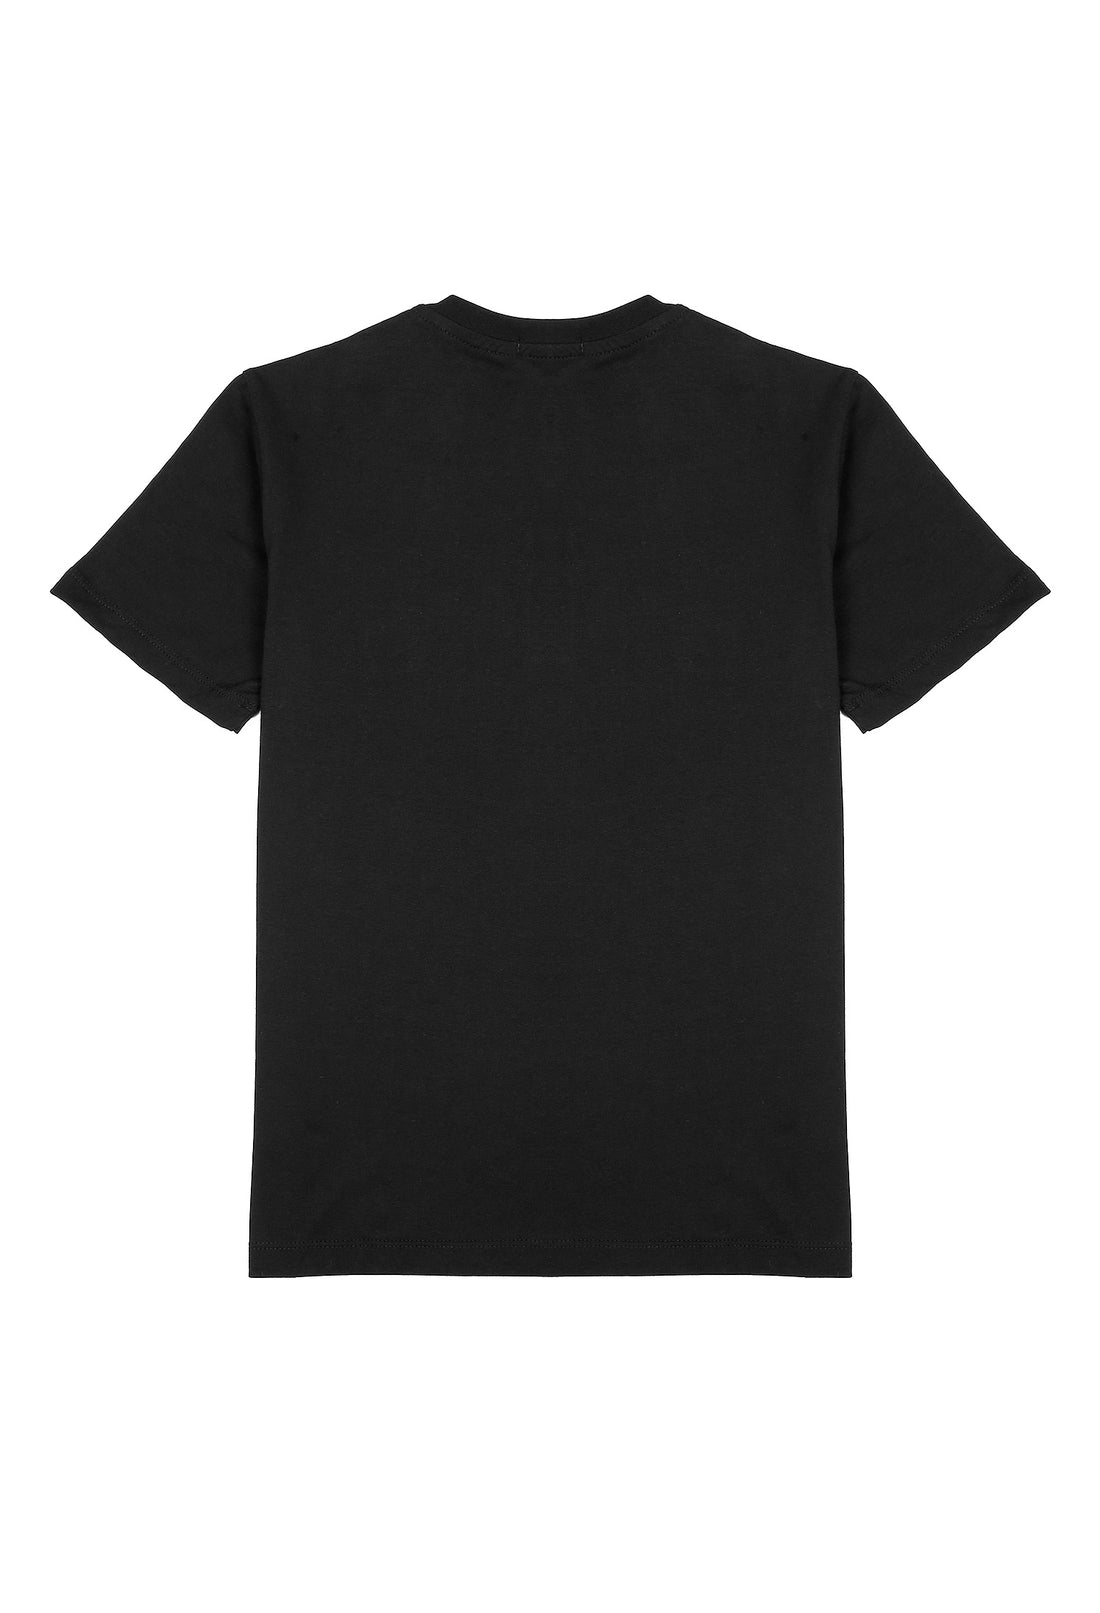 T-shirt materiał czarny łączony MSGM 123 9580 123/92c